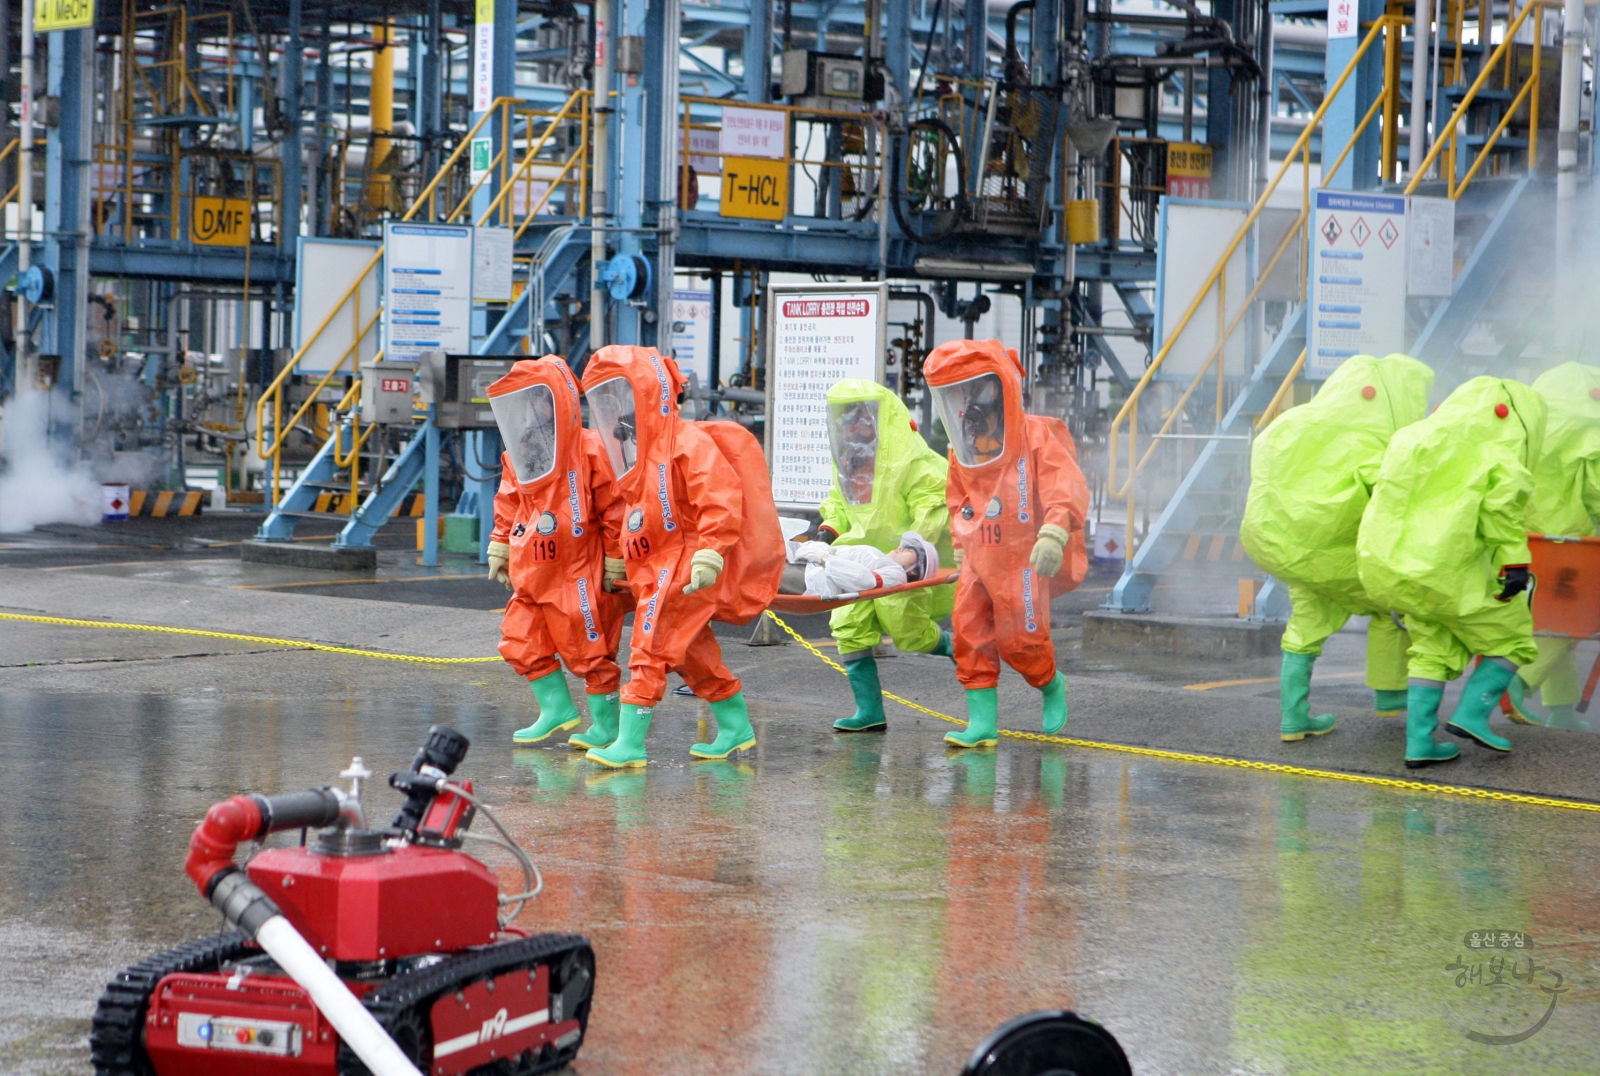 2014 안전한국훈련 유해물질 누출 화재발생에 따른 현장대응훈련 의 사진